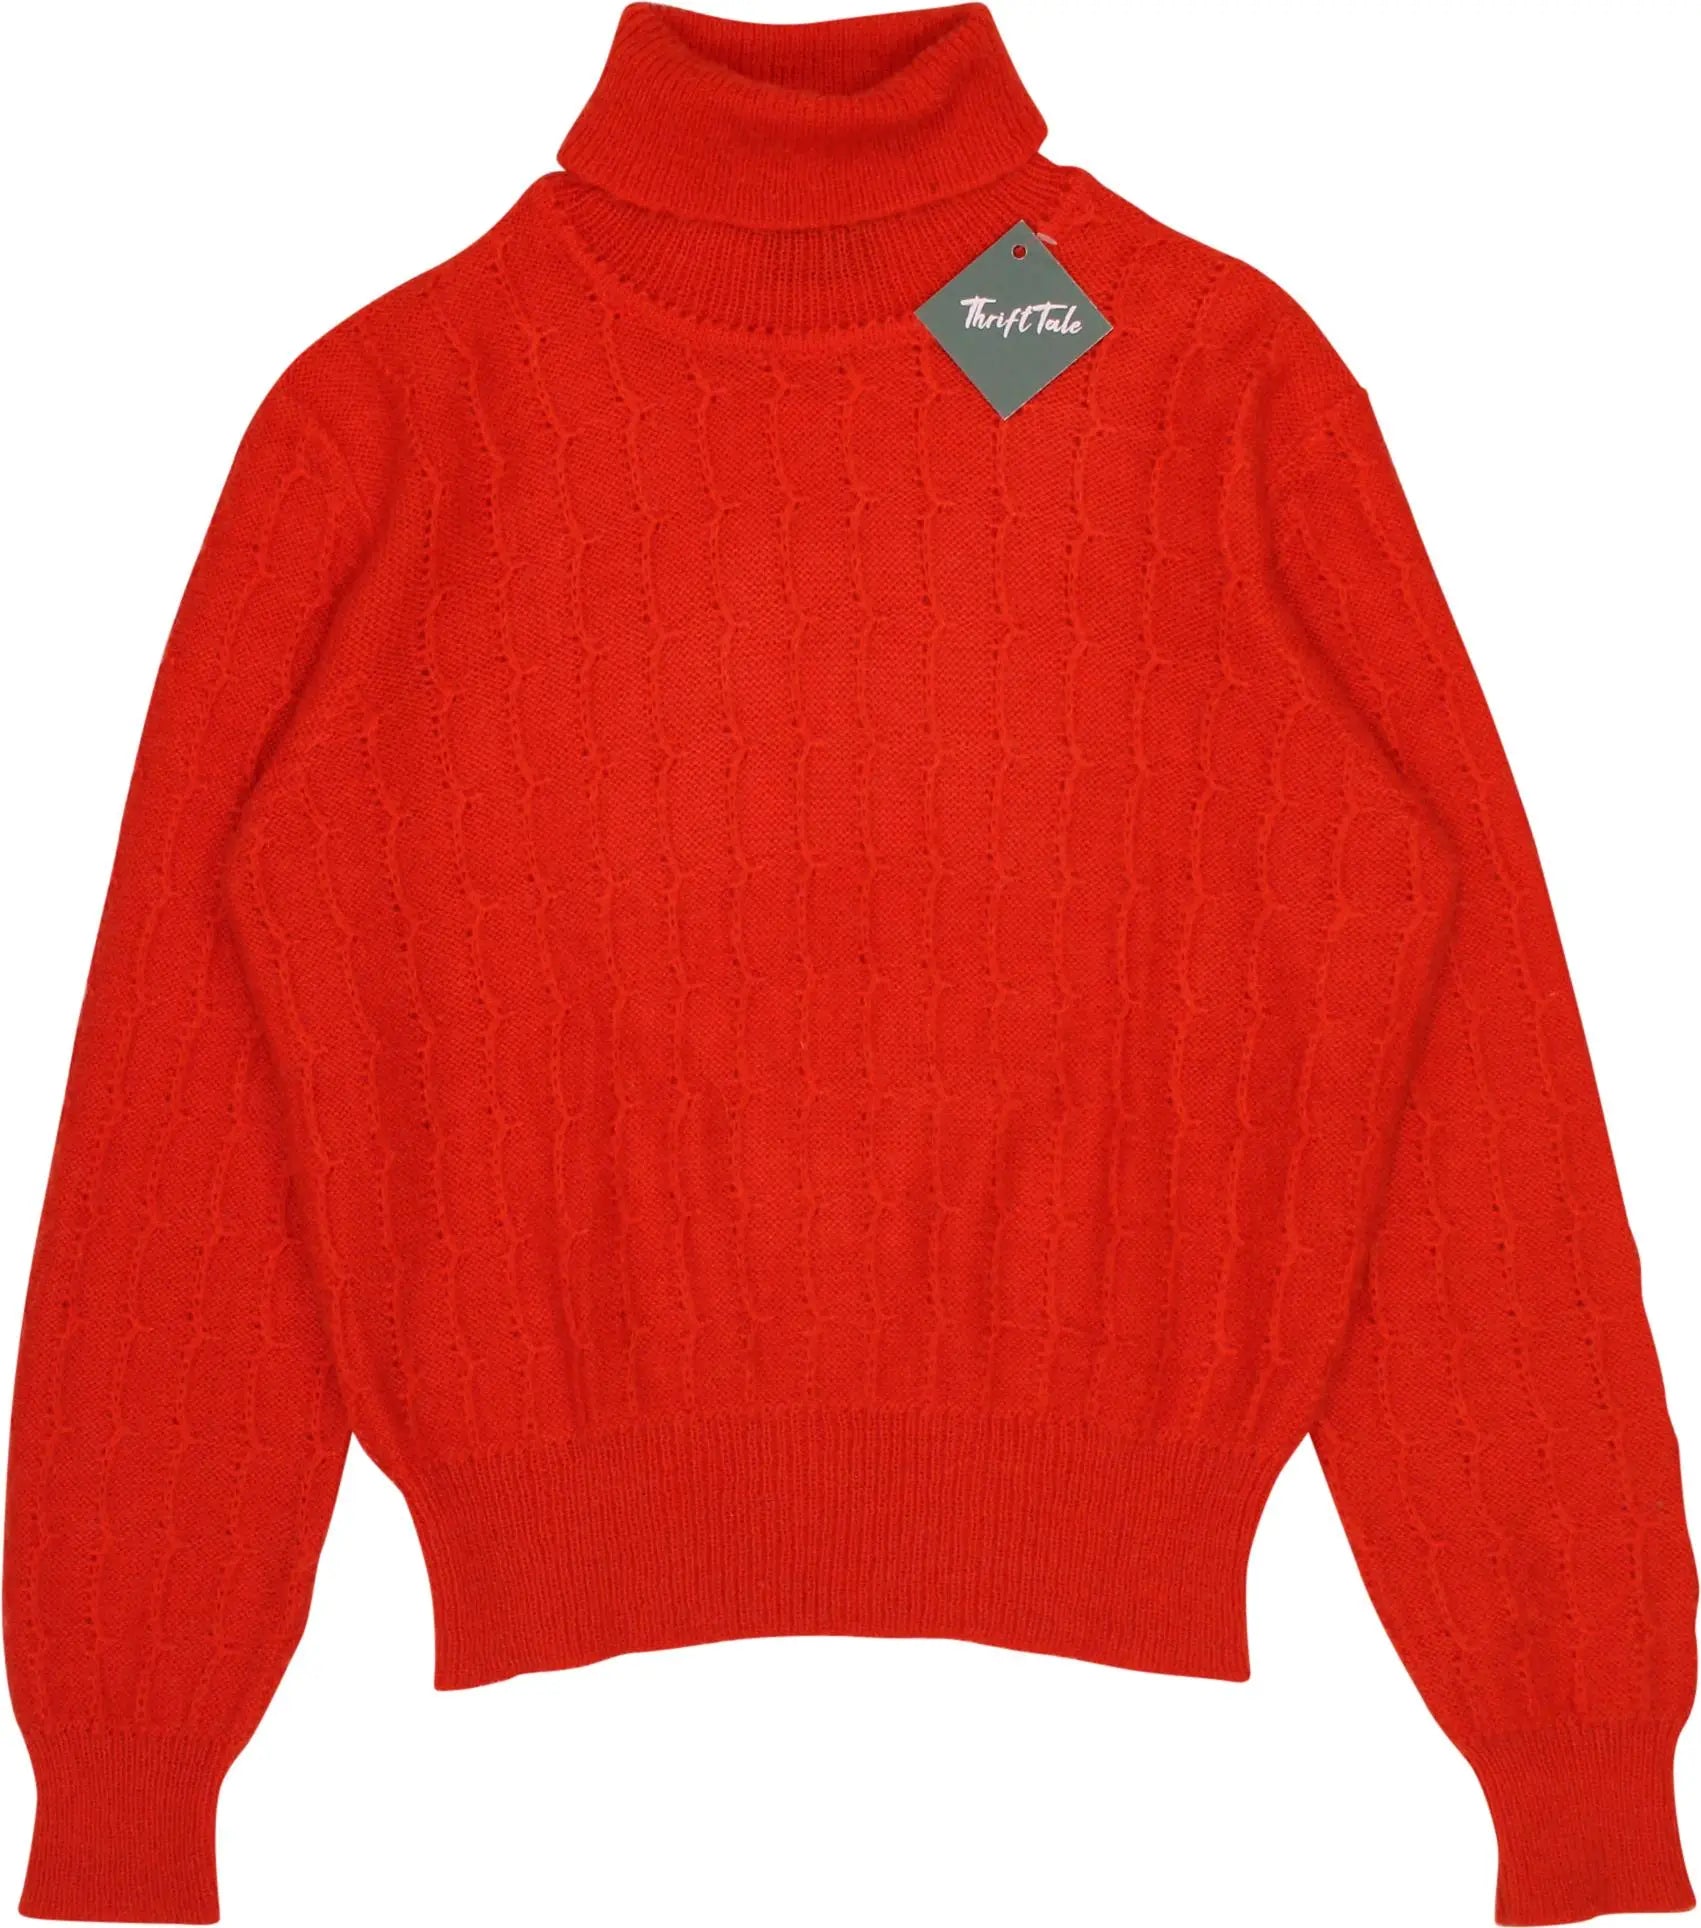 Rodes - Knitted Orange Turtleneck Jumper- ThriftTale.com - Vintage and second handclothing